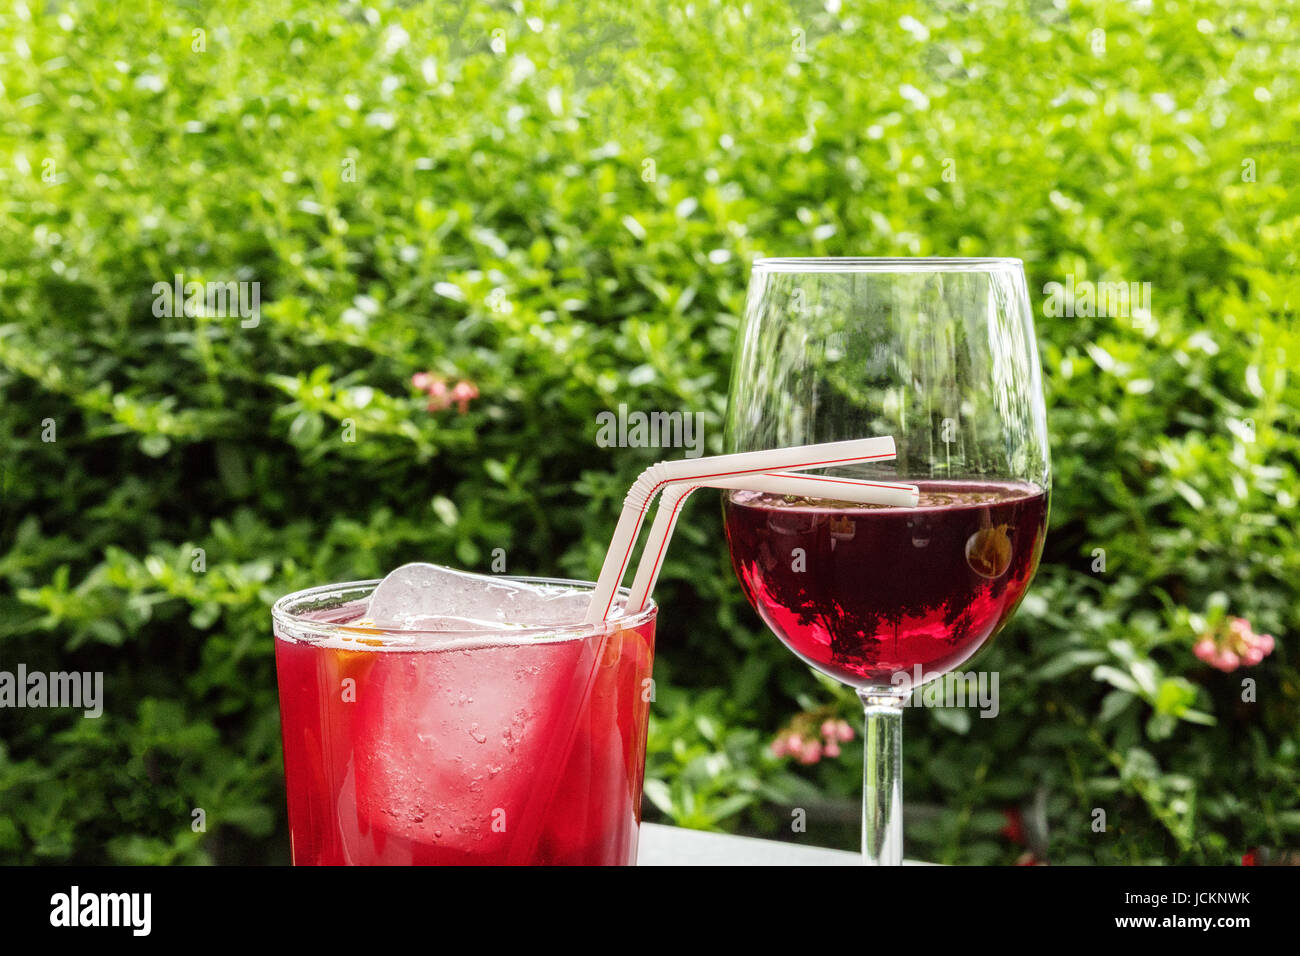 Un verre de tinto de verano, un cocktail d'été d'espagnol, et un verre de vin rouge, sur une terrasse dans un jardin, avec une place pour le texte. Selective focus Banque D'Images